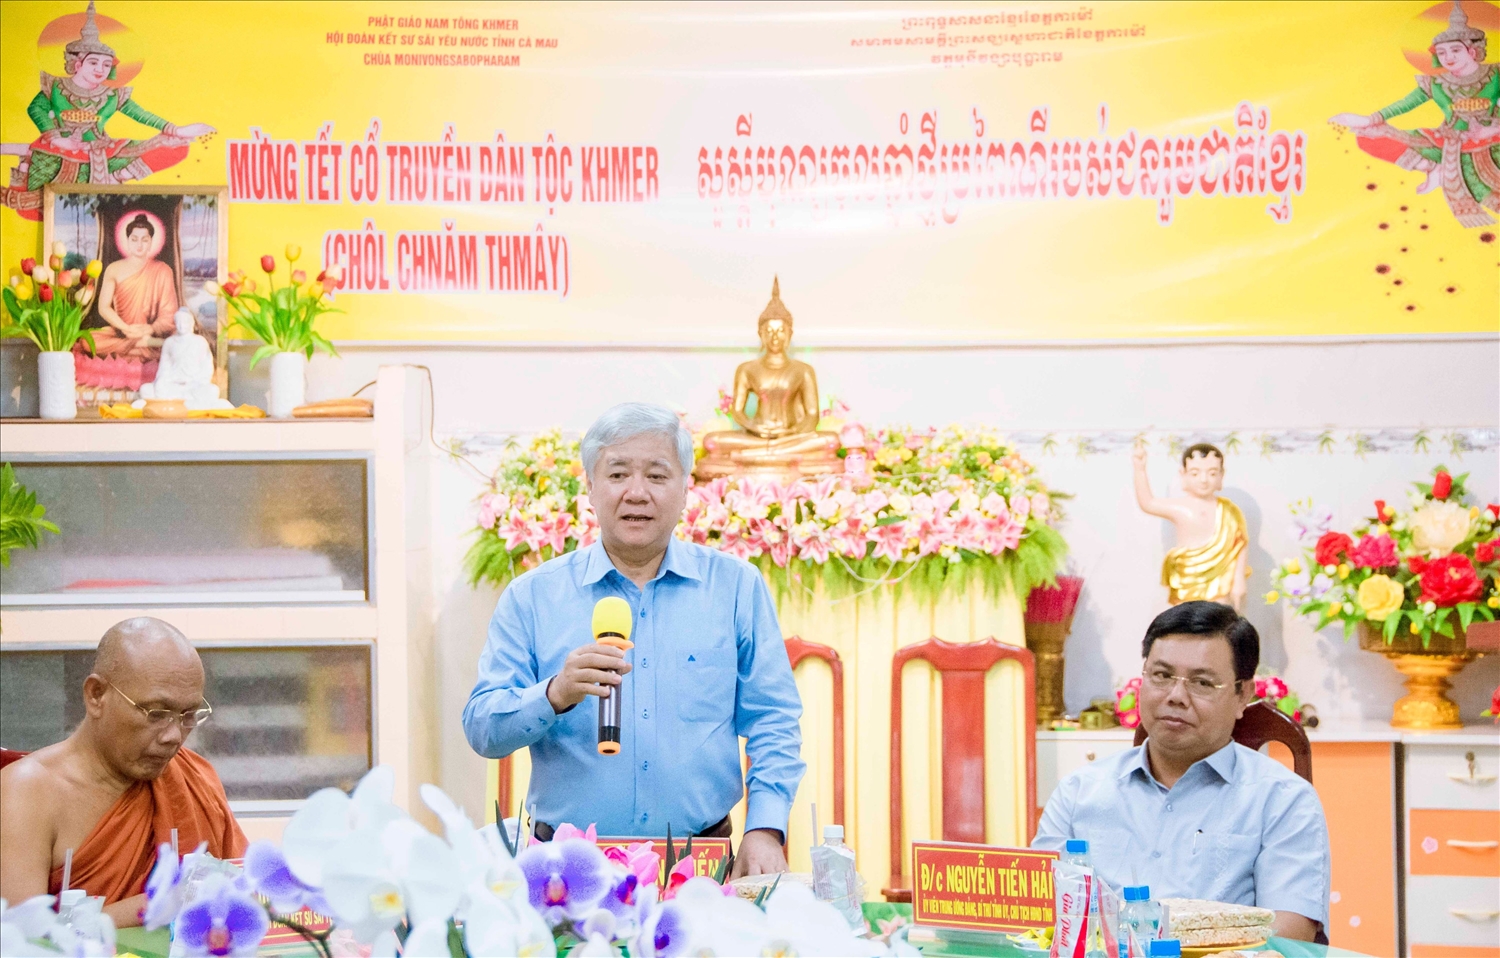 Chủ tịch Ủy ban Trung ương MTTQ Việt Nam Đỗ Văn Chiến chúc Tết Hội Đoàn kết sư sãi yêu nước tỉnh Cà Mau